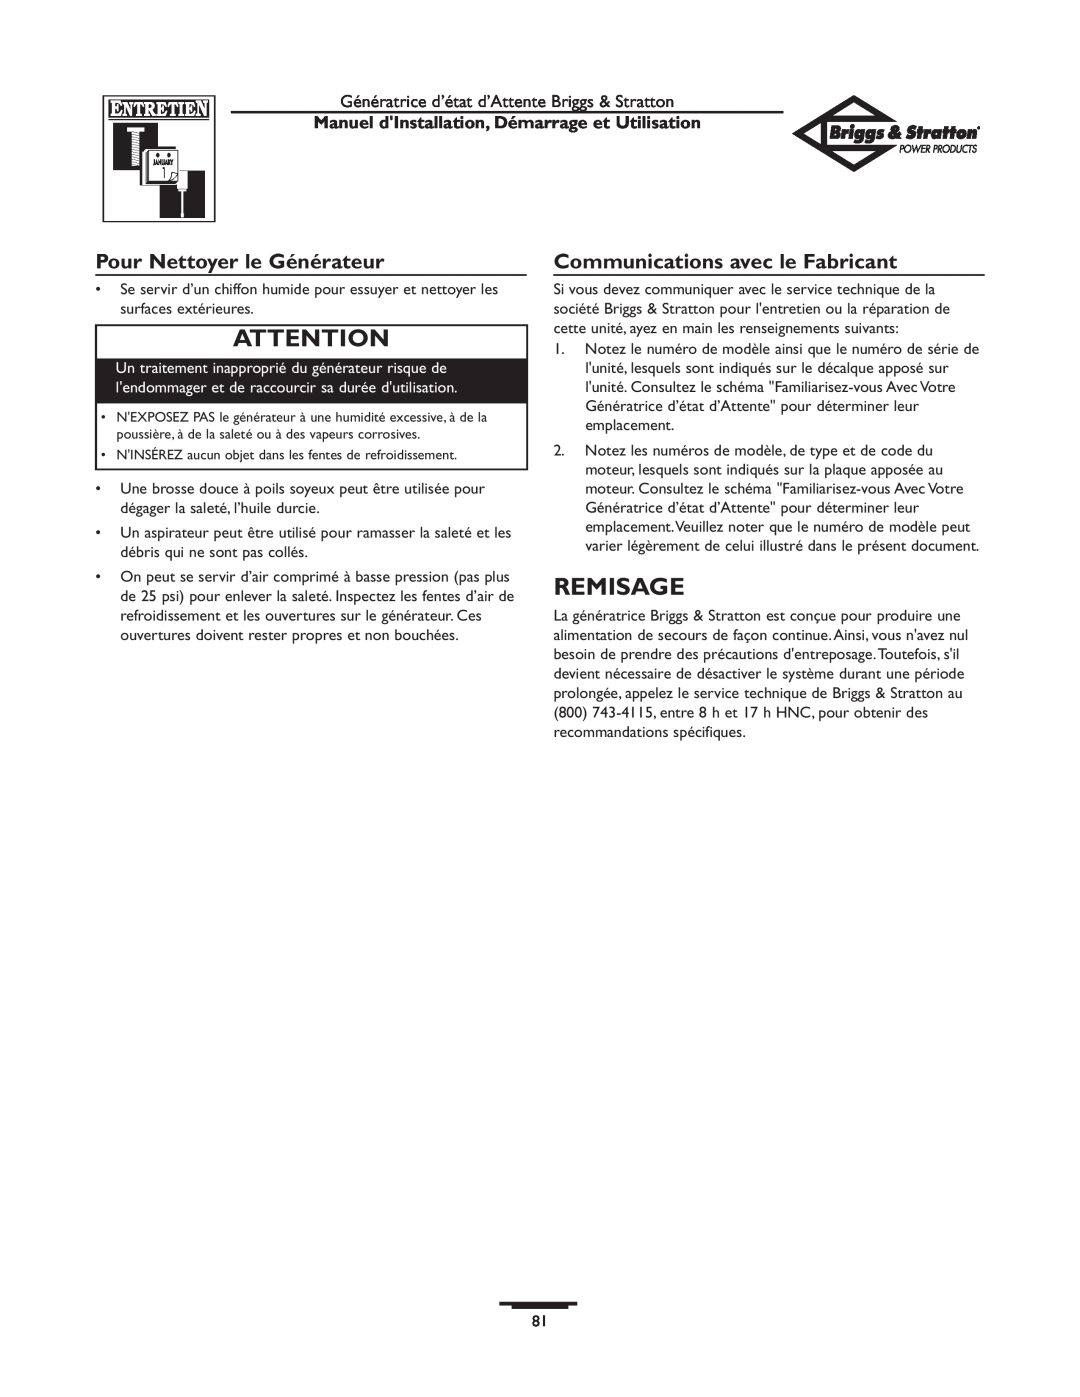 Briggs & Stratton 01897-0 manual Remisage, Pour Nettoyer le Générateur, Communications avec le Fabricant 